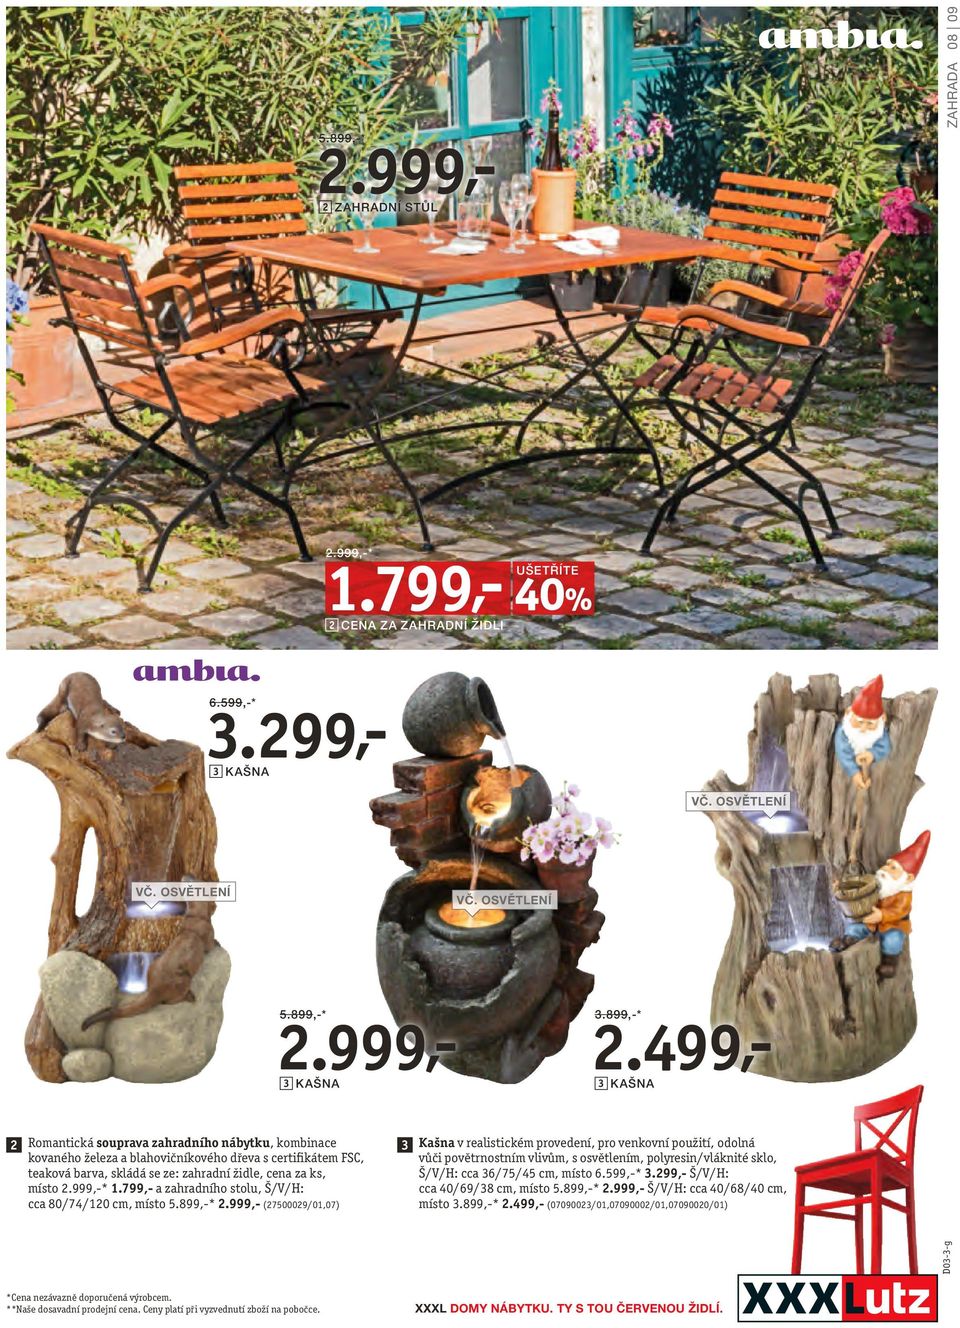 499,- 3 KAŠNA 2 Romantická souprava zahradního nábytku, kombinace kovaného železa a blahovičníkového dřeva s certifikátem FSC, teaková barva, skládá se ze: zahradní židle, cena za ks, místo 2.